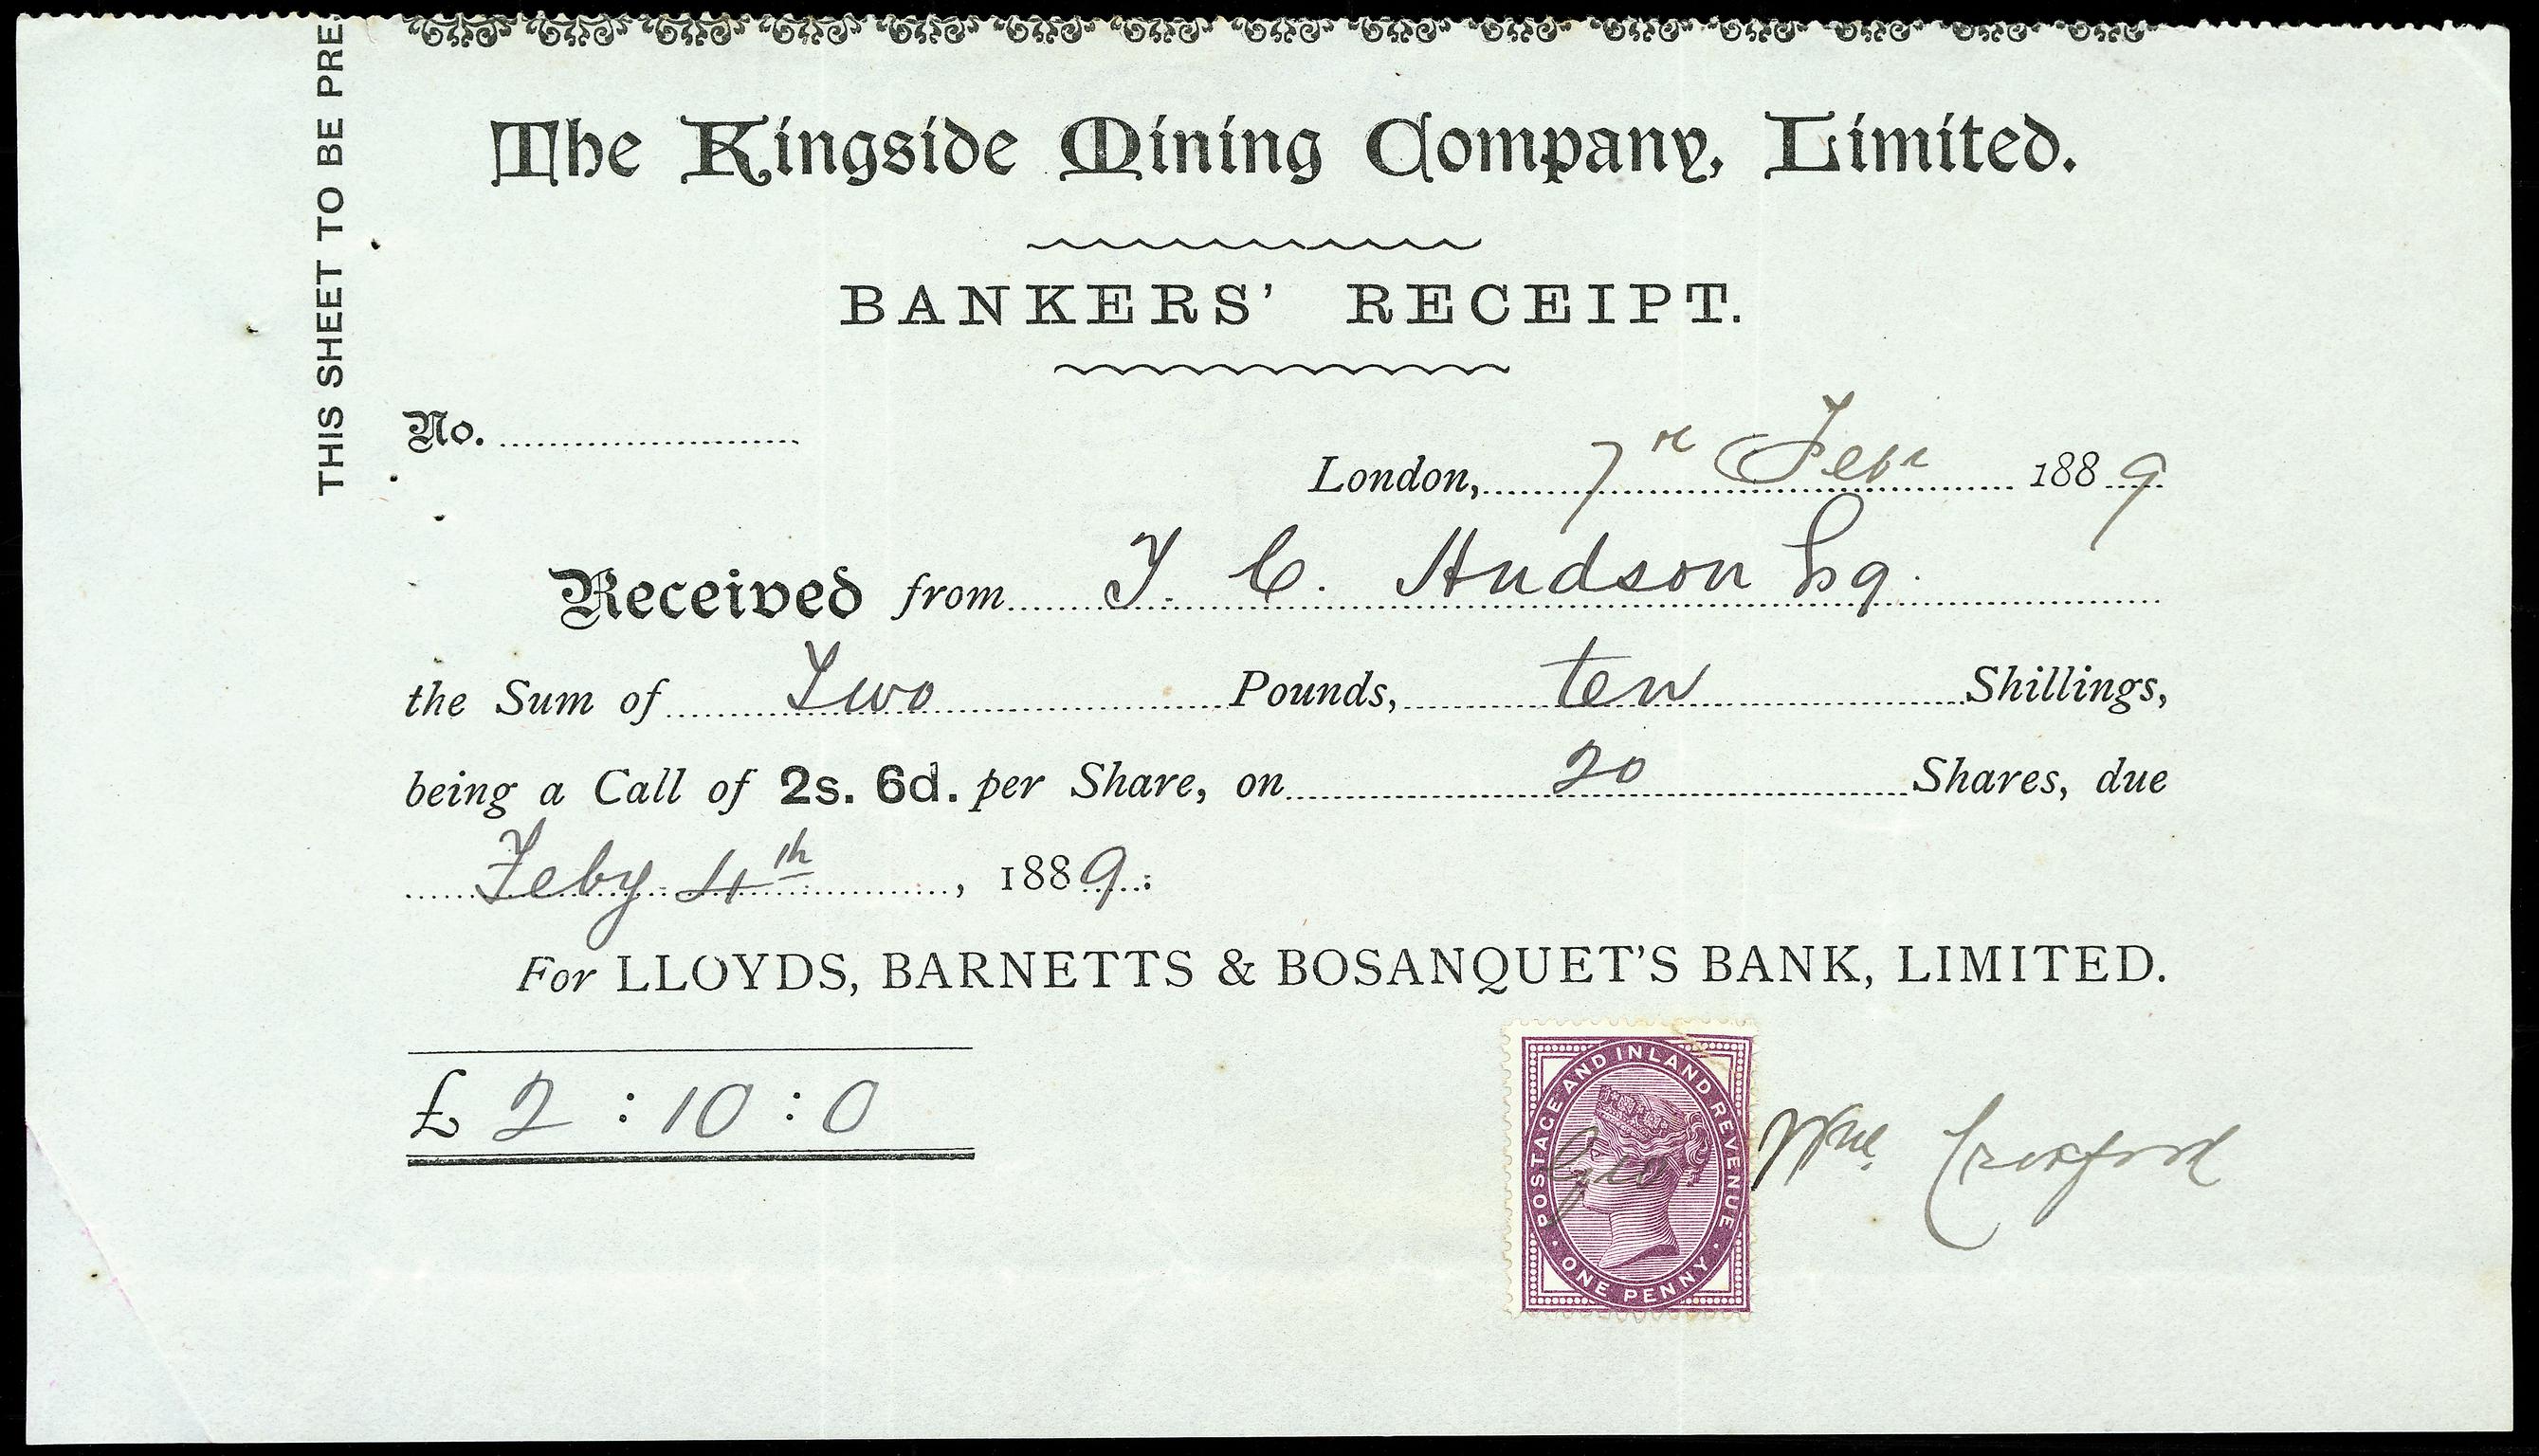 Kingside Mining Co. Ltd., bankers' receipt